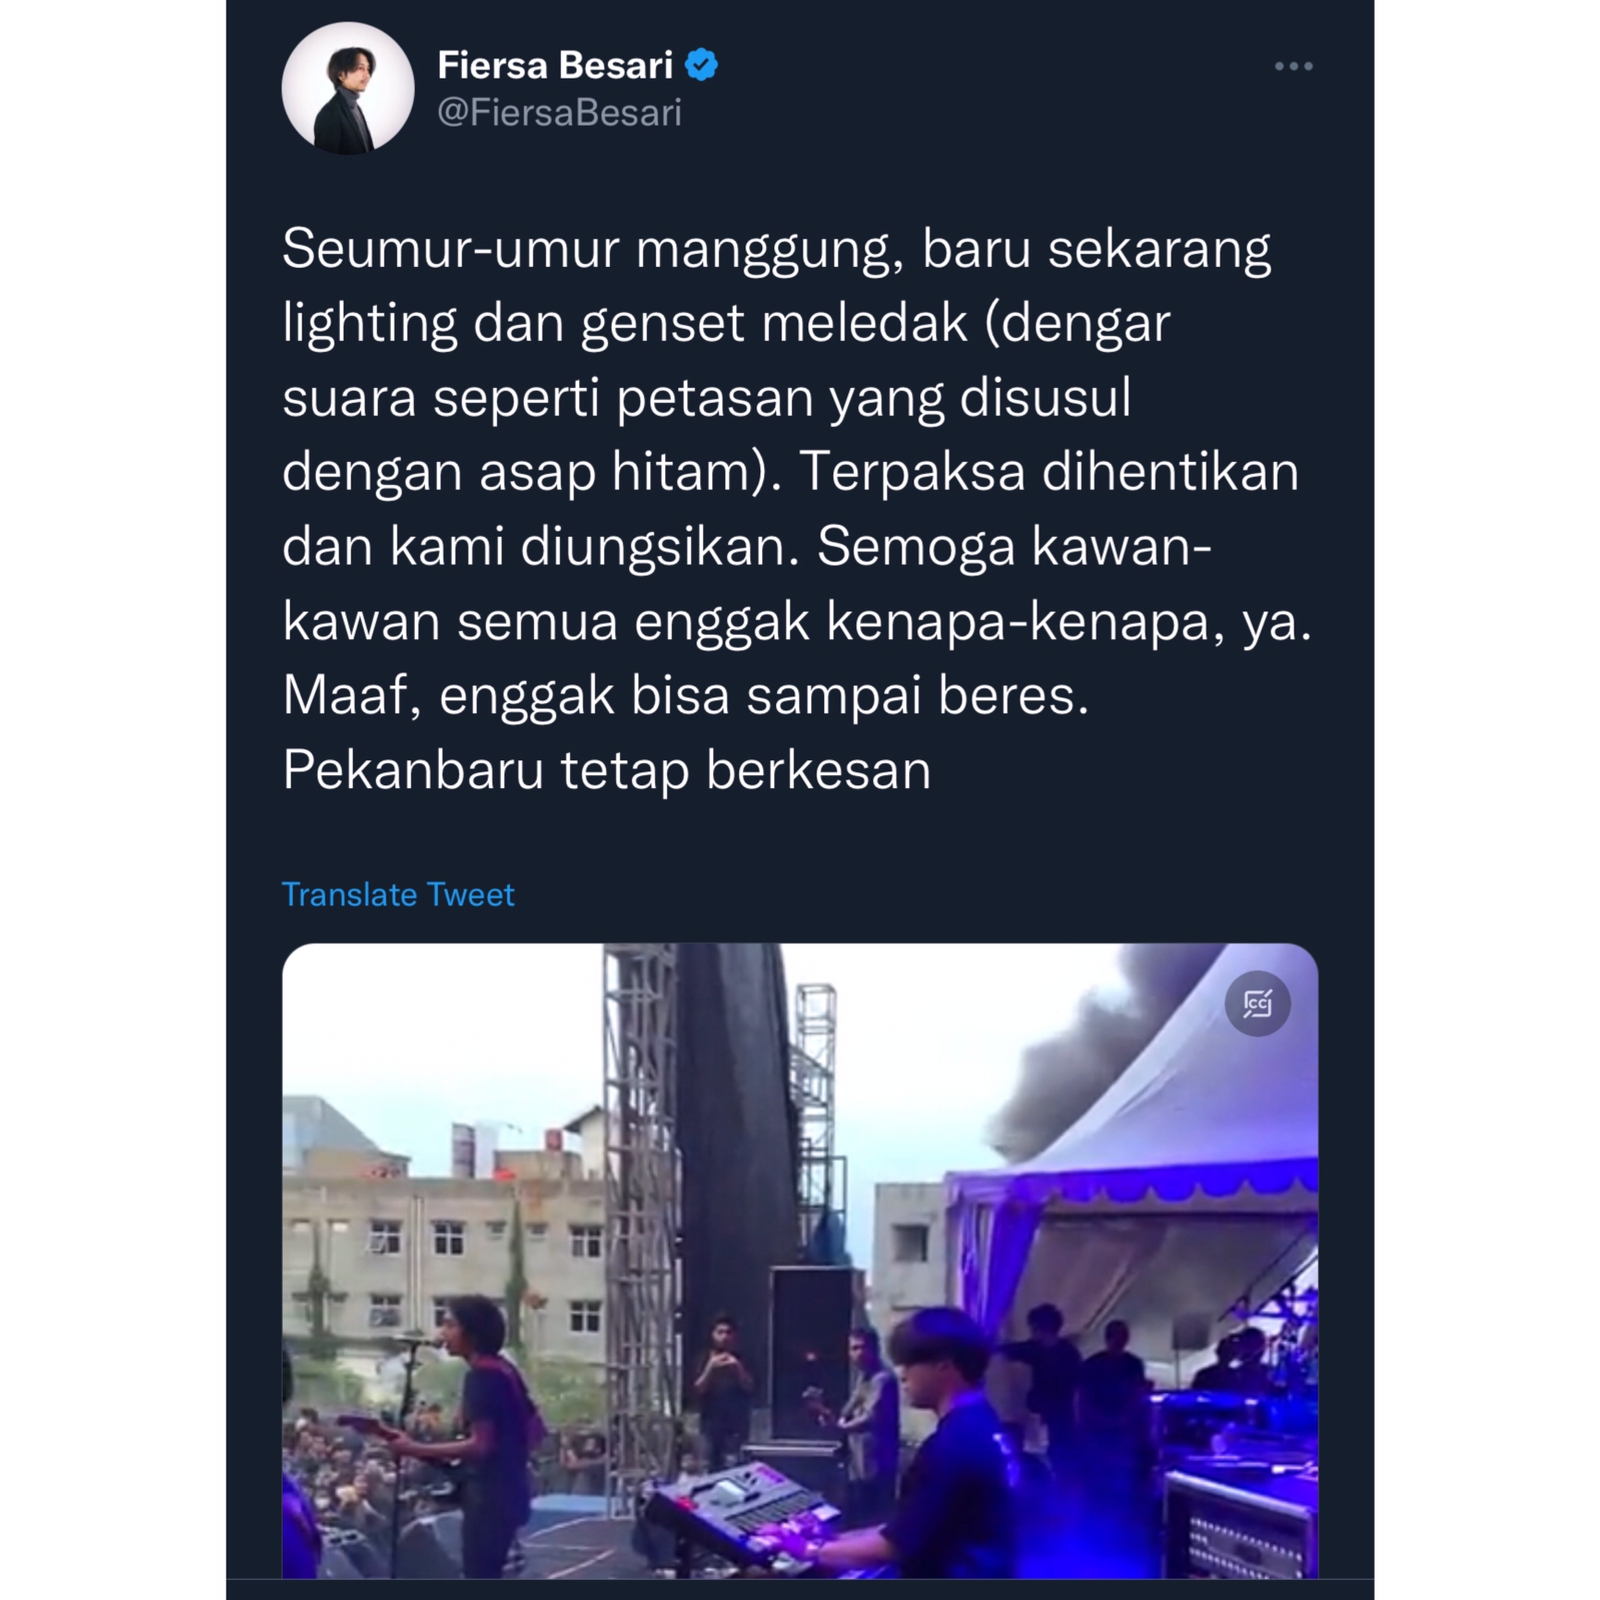 Tampil di Pekanbaru, Fiersa Bersari Ceritakan Momen Genset dan Lampu Meledak di Atas Panggung